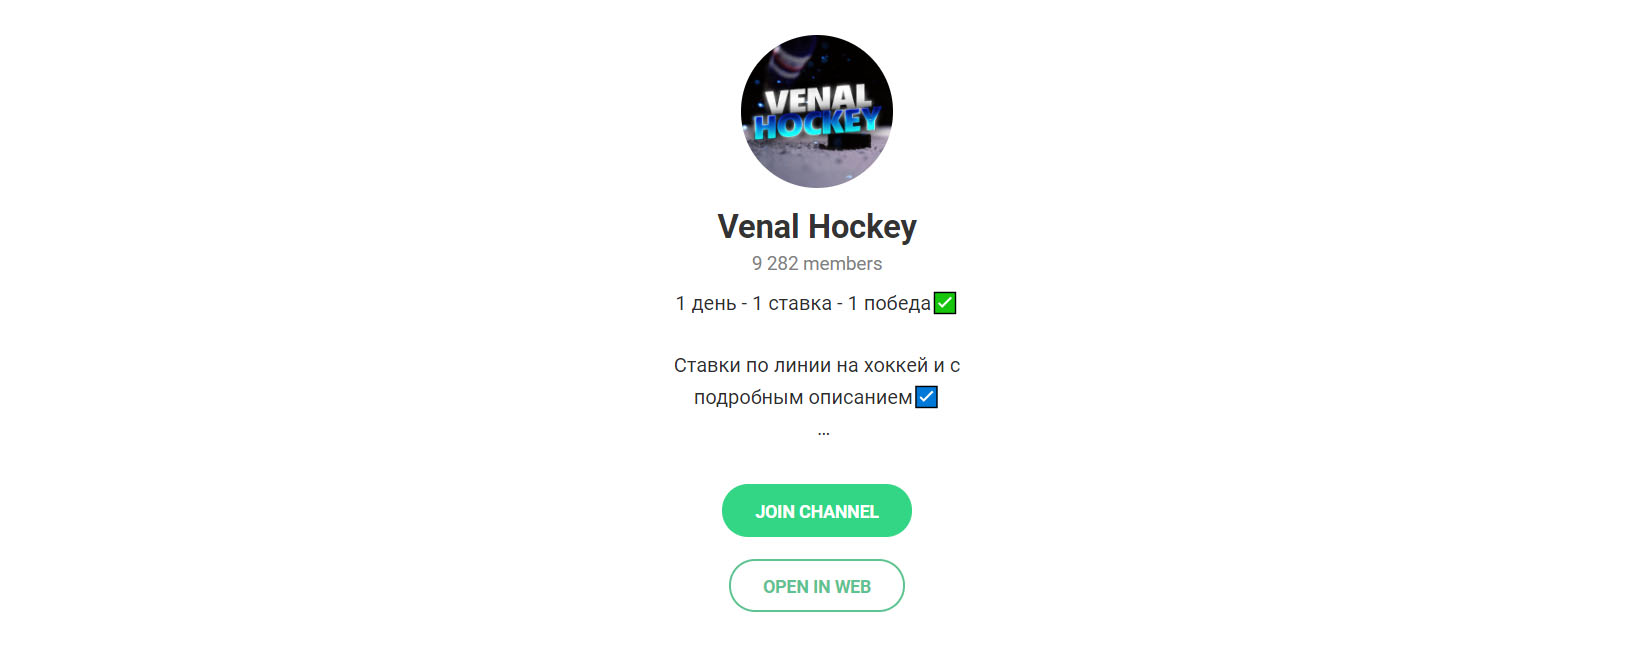 Внешний вид телеграм канала Venal Hockey